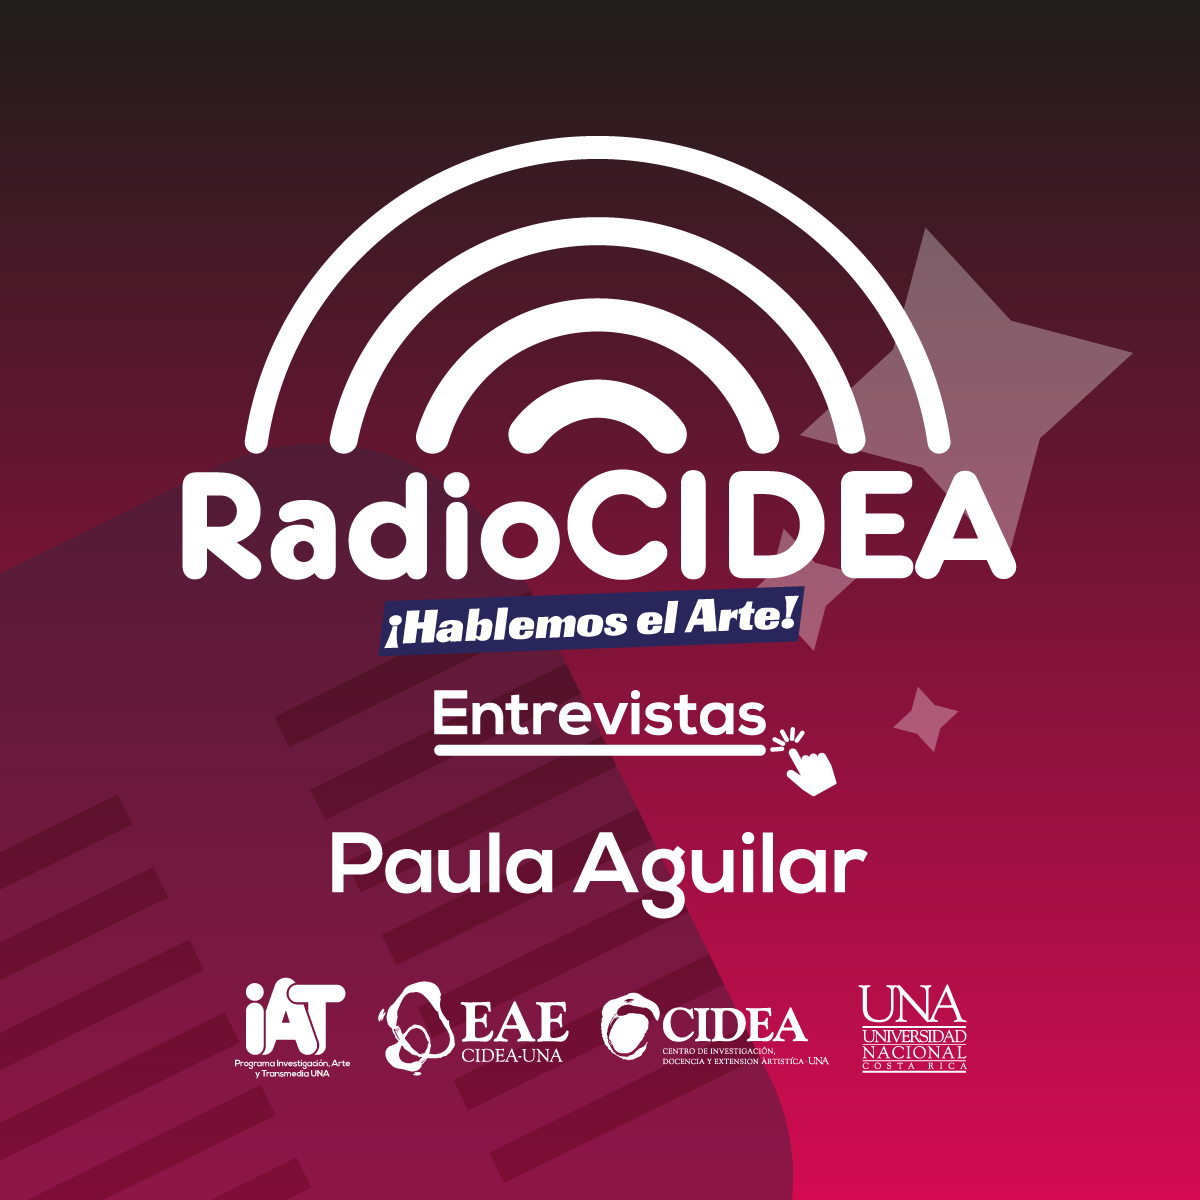 Paula Aguilar